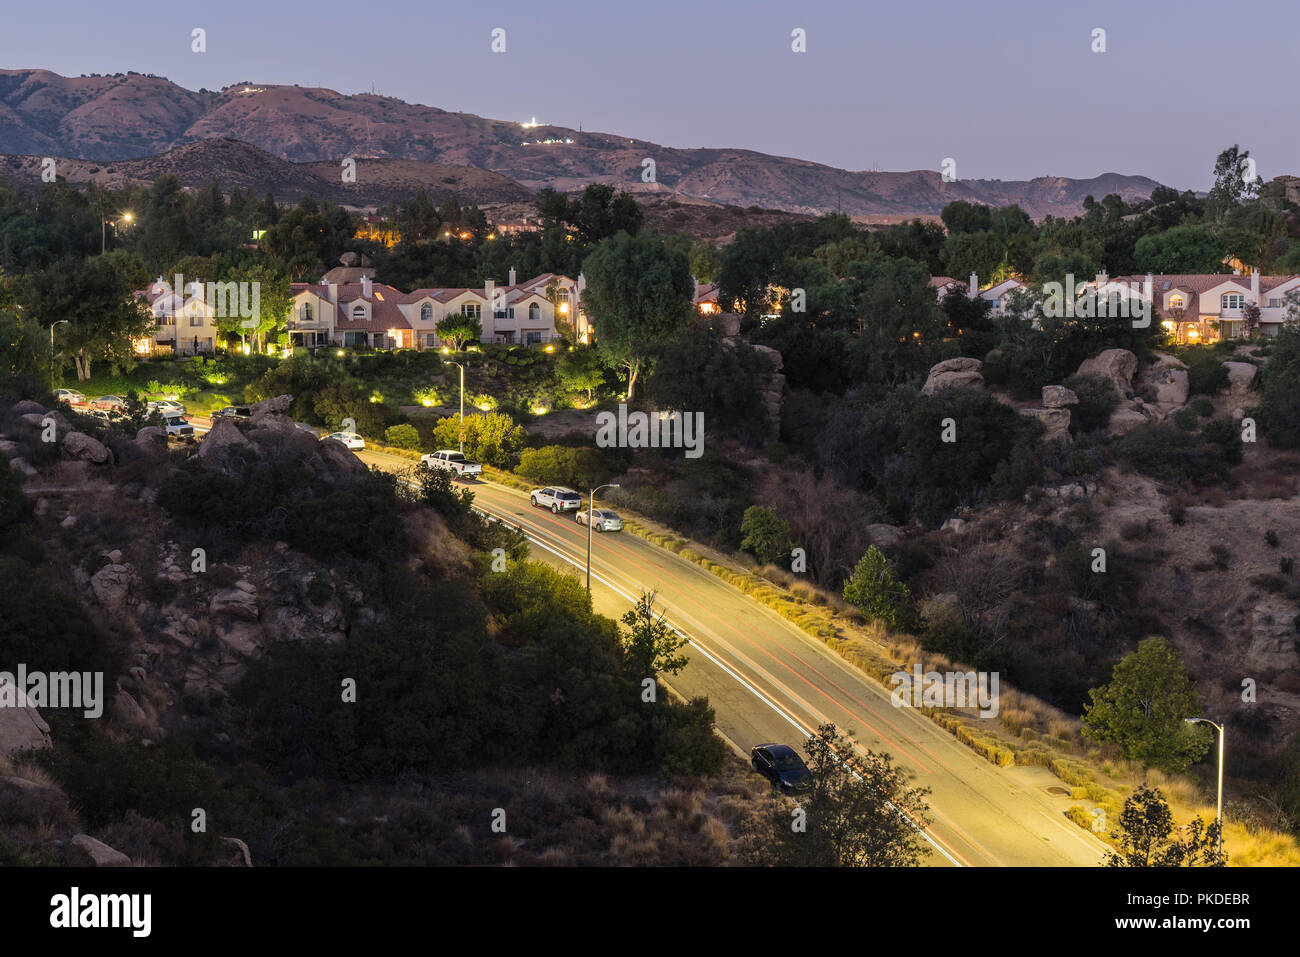 Crépuscule vue sur colline maison nichée dans les rochers au-dessus de la vallée de San Fernando de Los Angeles en Californie. Banque D'Images